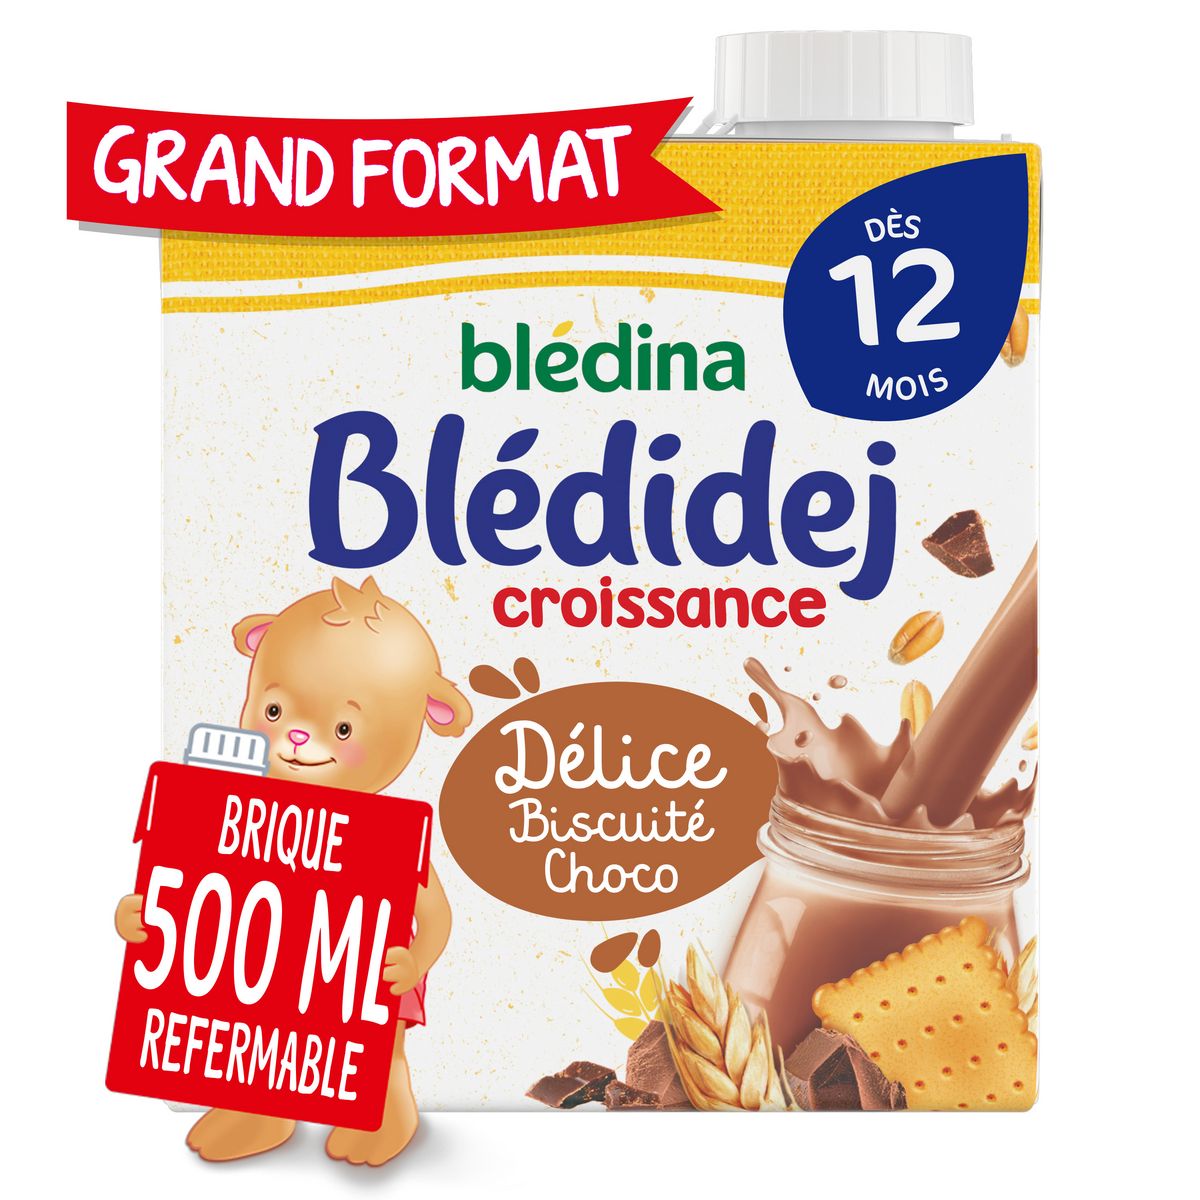 BLEDINA Blédidej céréales lactées biscuité choco dès 12 mois 500ml